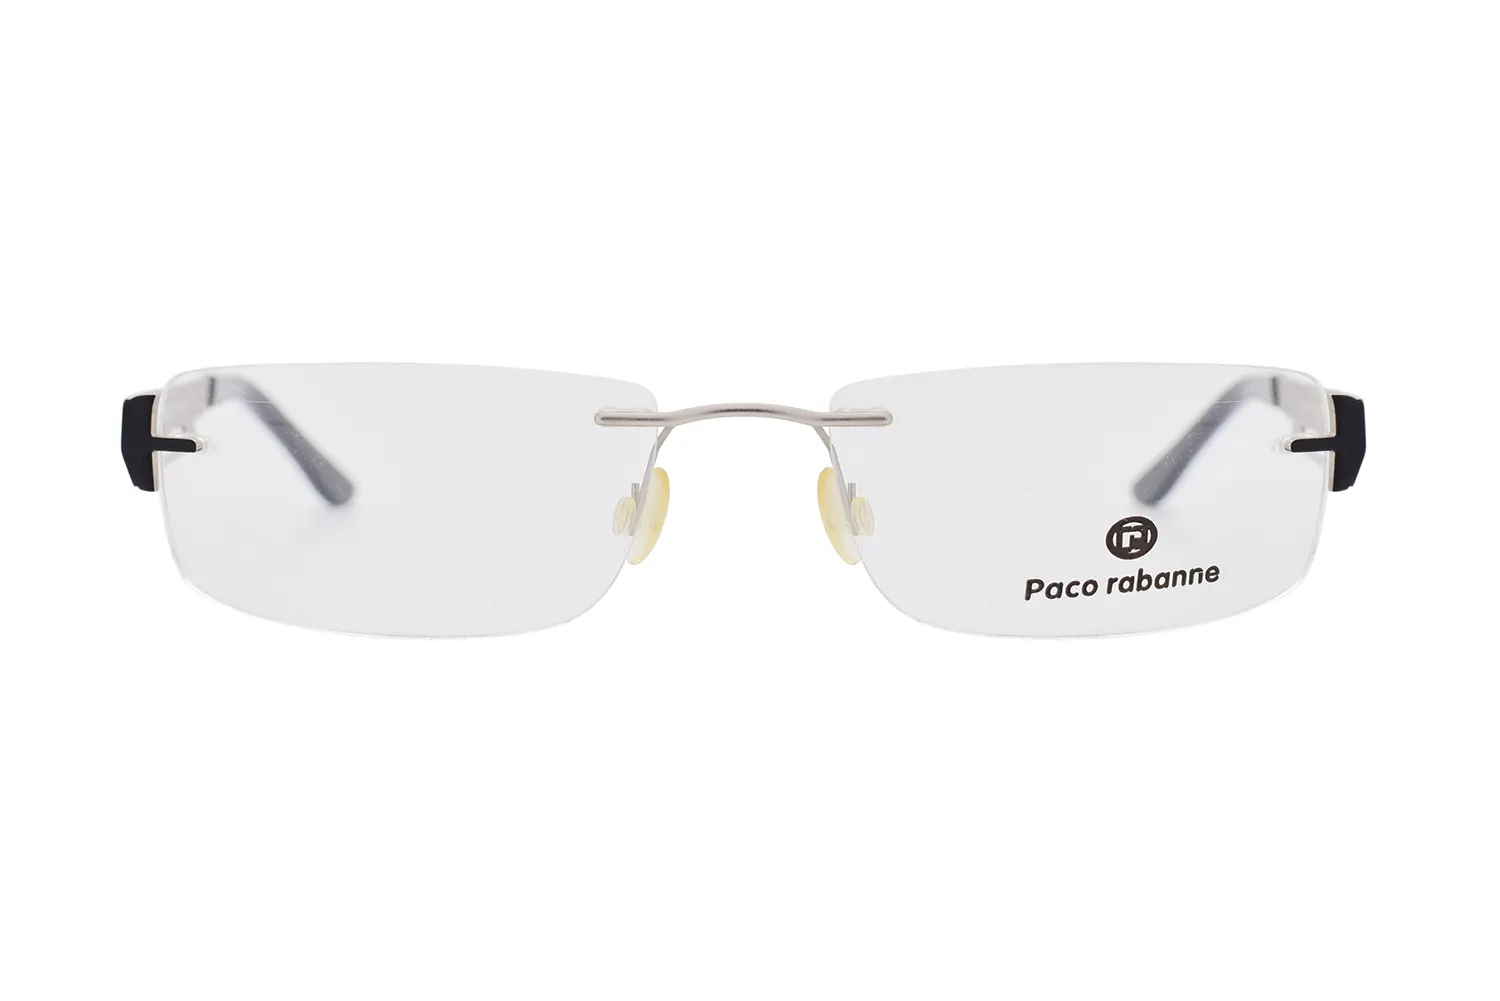 عینک طبی Paco rabanne مدل P1027 C1 - دکترعینک